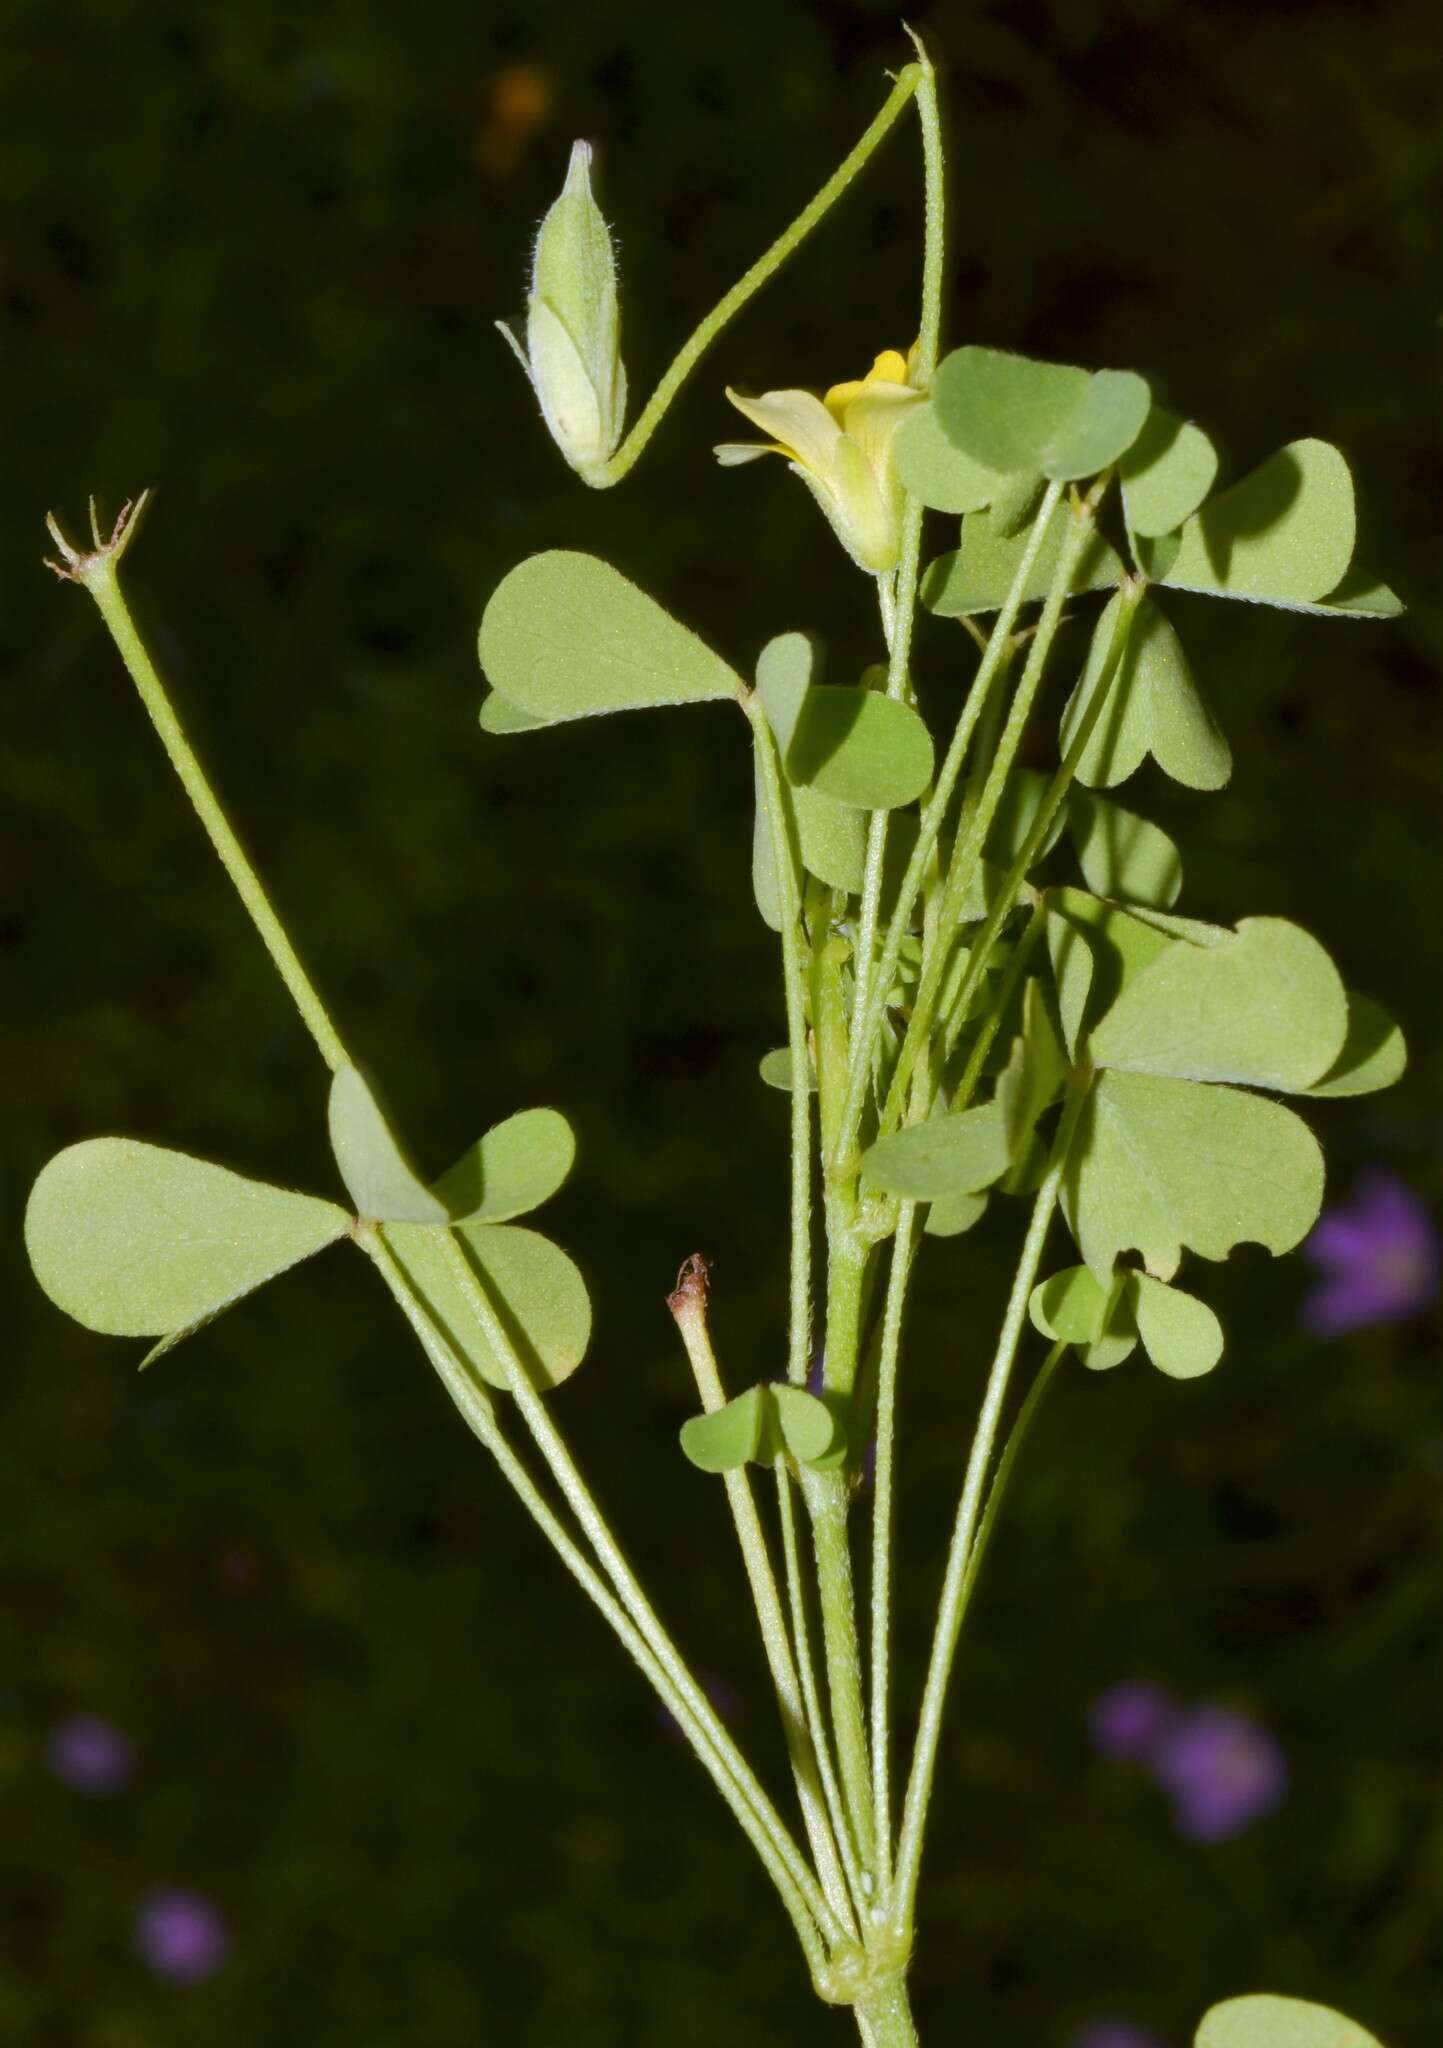 Sivun Oxalis priceae subsp. texana (Small) Eiten kuva